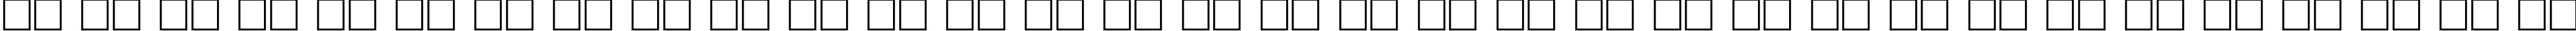 Пример написания русского алфавита шрифтом DG_Aachen